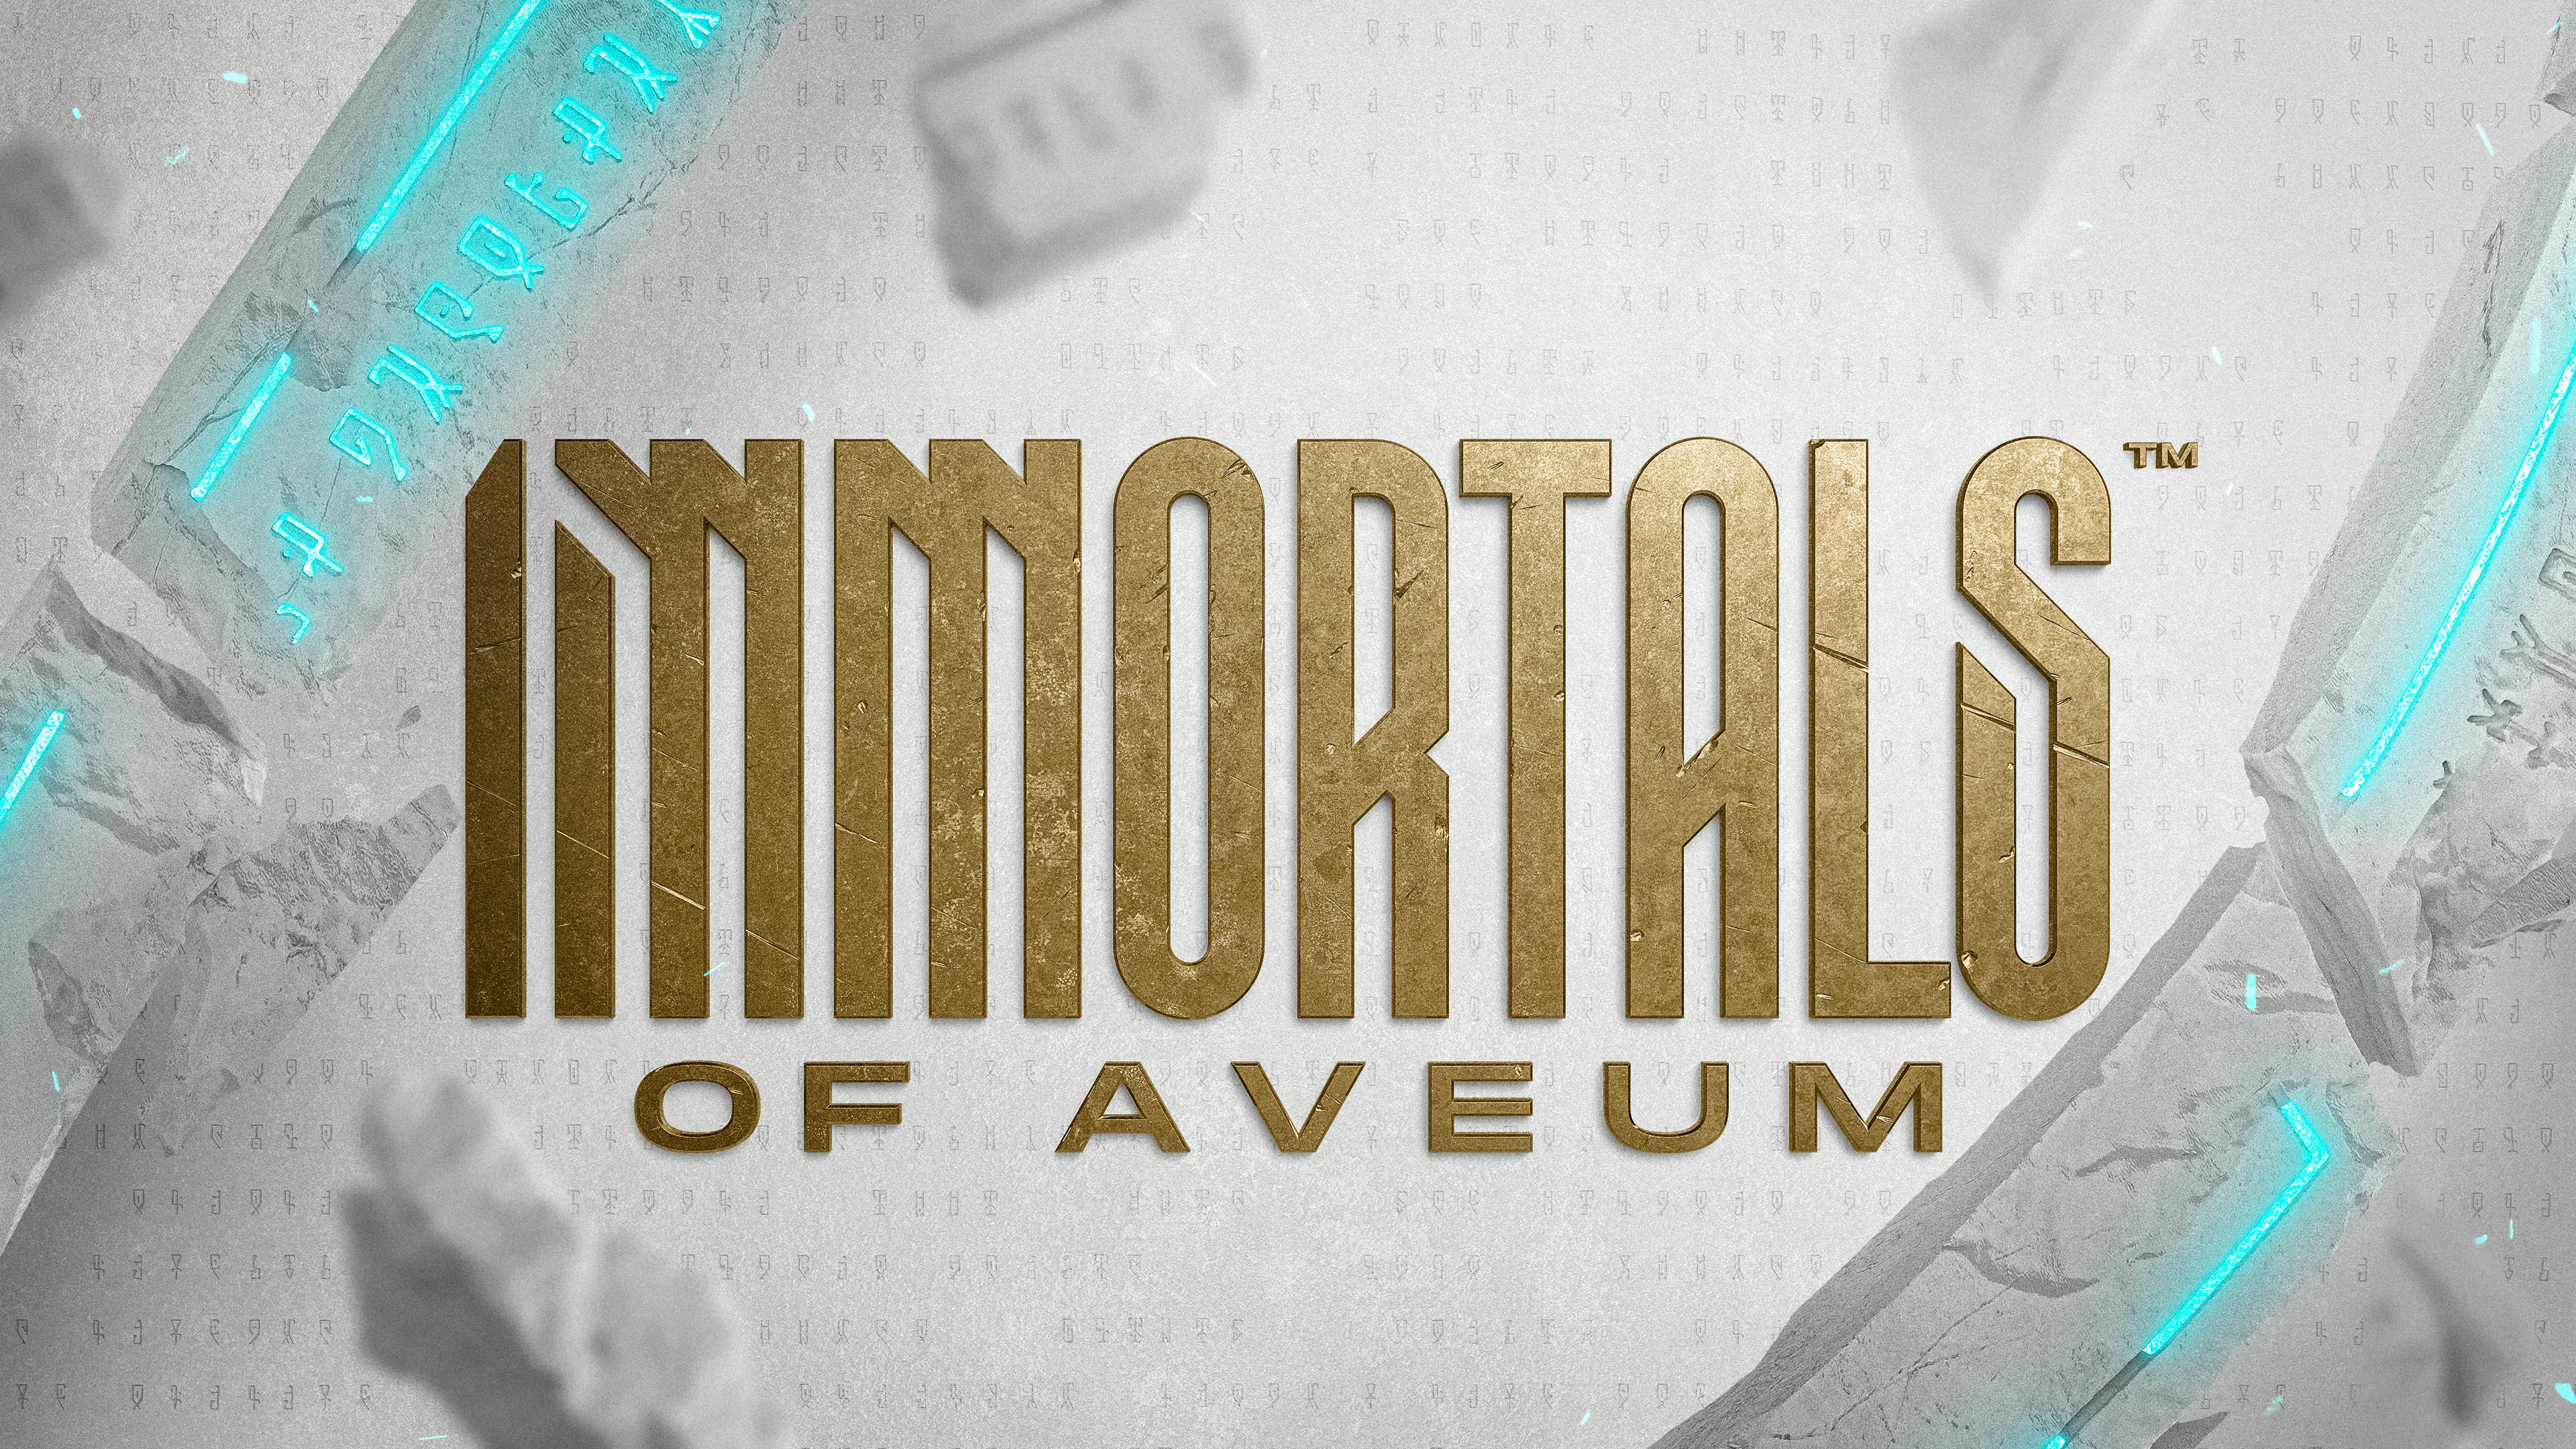 Immortals of aveum 2022 12 08 22 004 12